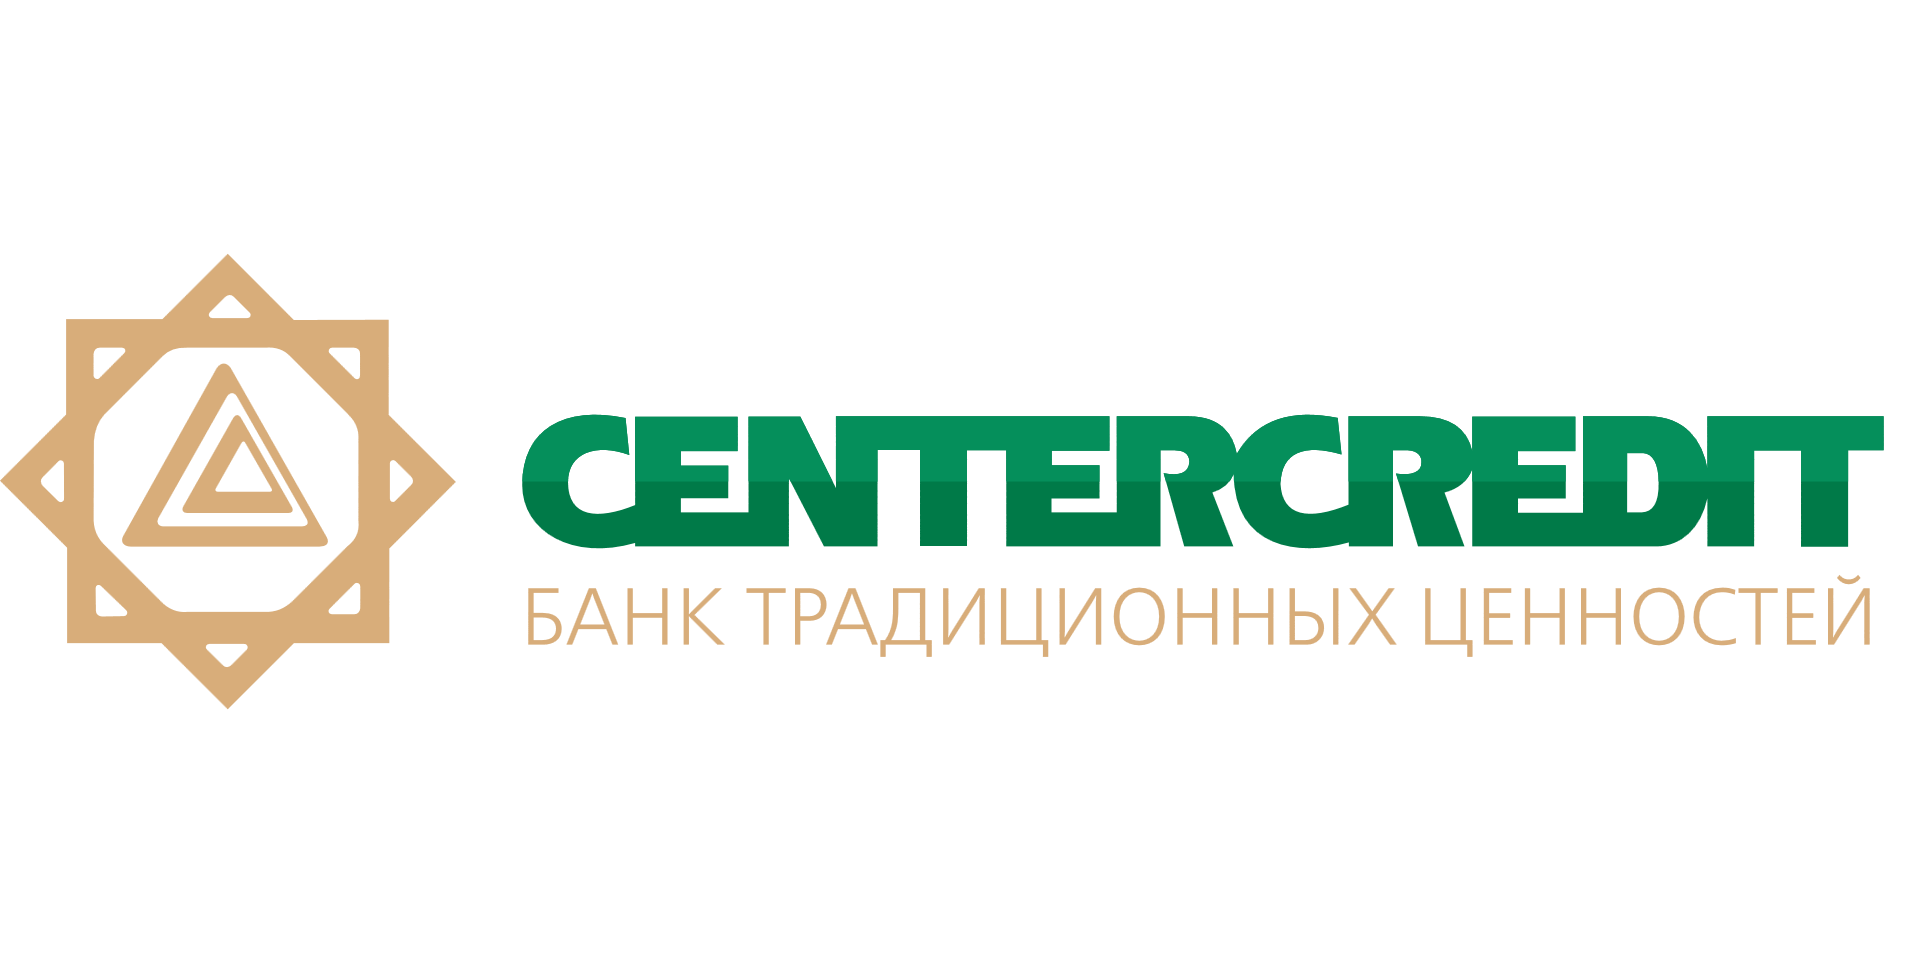 Bank CENTERCREDIT В Казахстане. Банк ЦЕНТРКРЕДИТ Казахстан лого. БЦК банк лого. Логотип банка ЦЕНТРКРЕДИТ.